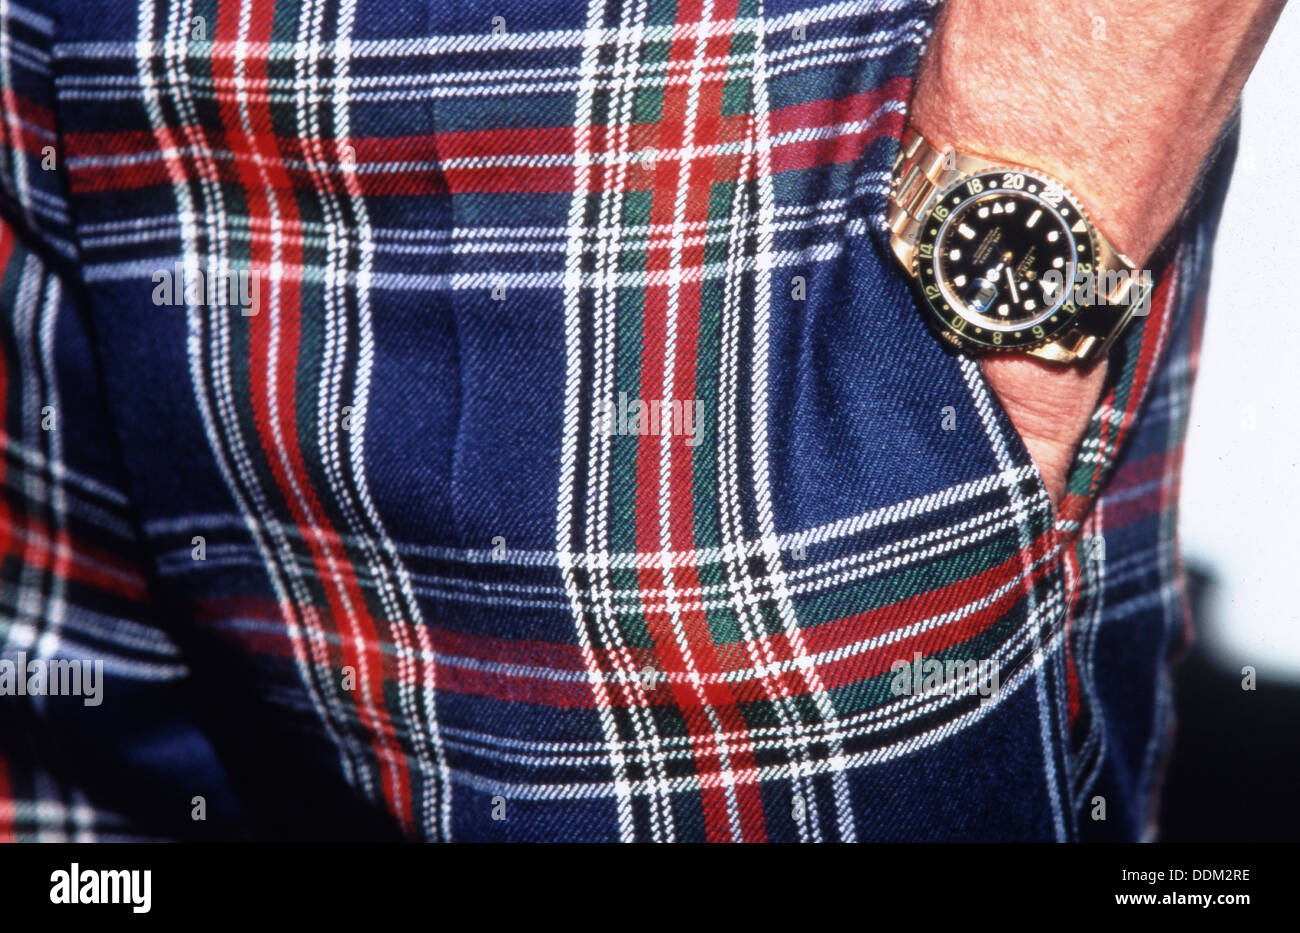 Sir Jackie Stewart, Formel 1 Weltmeister. Rolex-Botschafter. Stockfoto